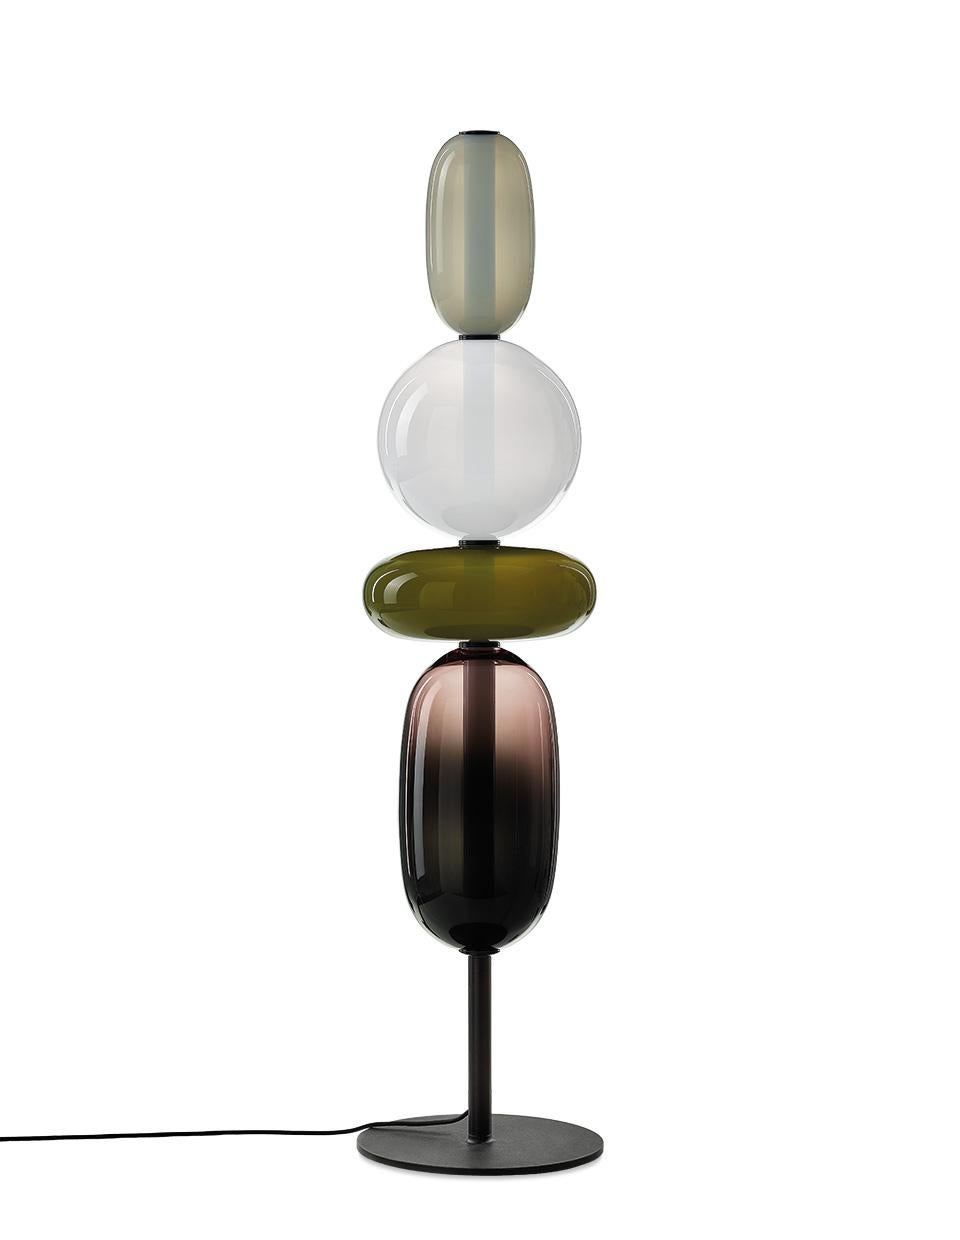 Contemporary Stehleuchte aus geblasenem Kristallglas - Pebbles von Boris Klimek für Bomma

Kieselsteine erinnern an besondere Momente oder Lieblingsorte. Ihre vielfältigen Formen und Farben haben BOMMA zu einer spielerischen Kollektion inspiriert,